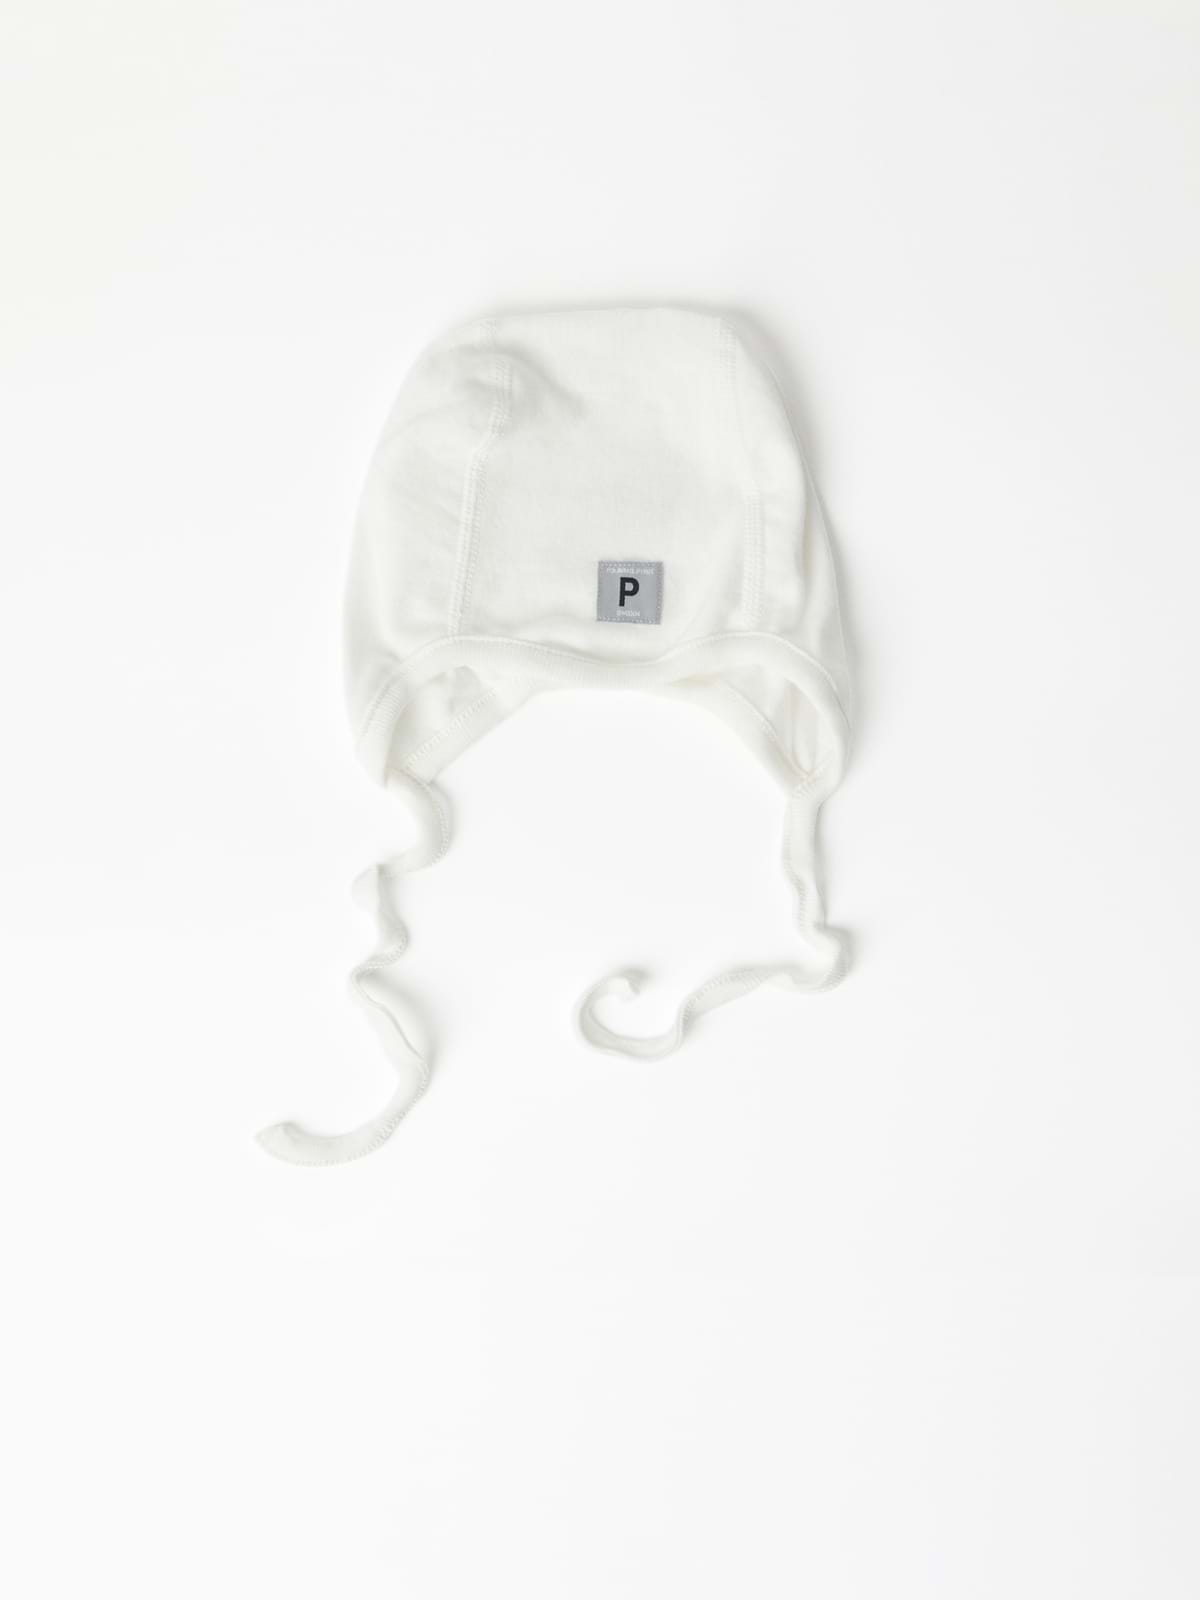 PO.P Baby Helmet Hat